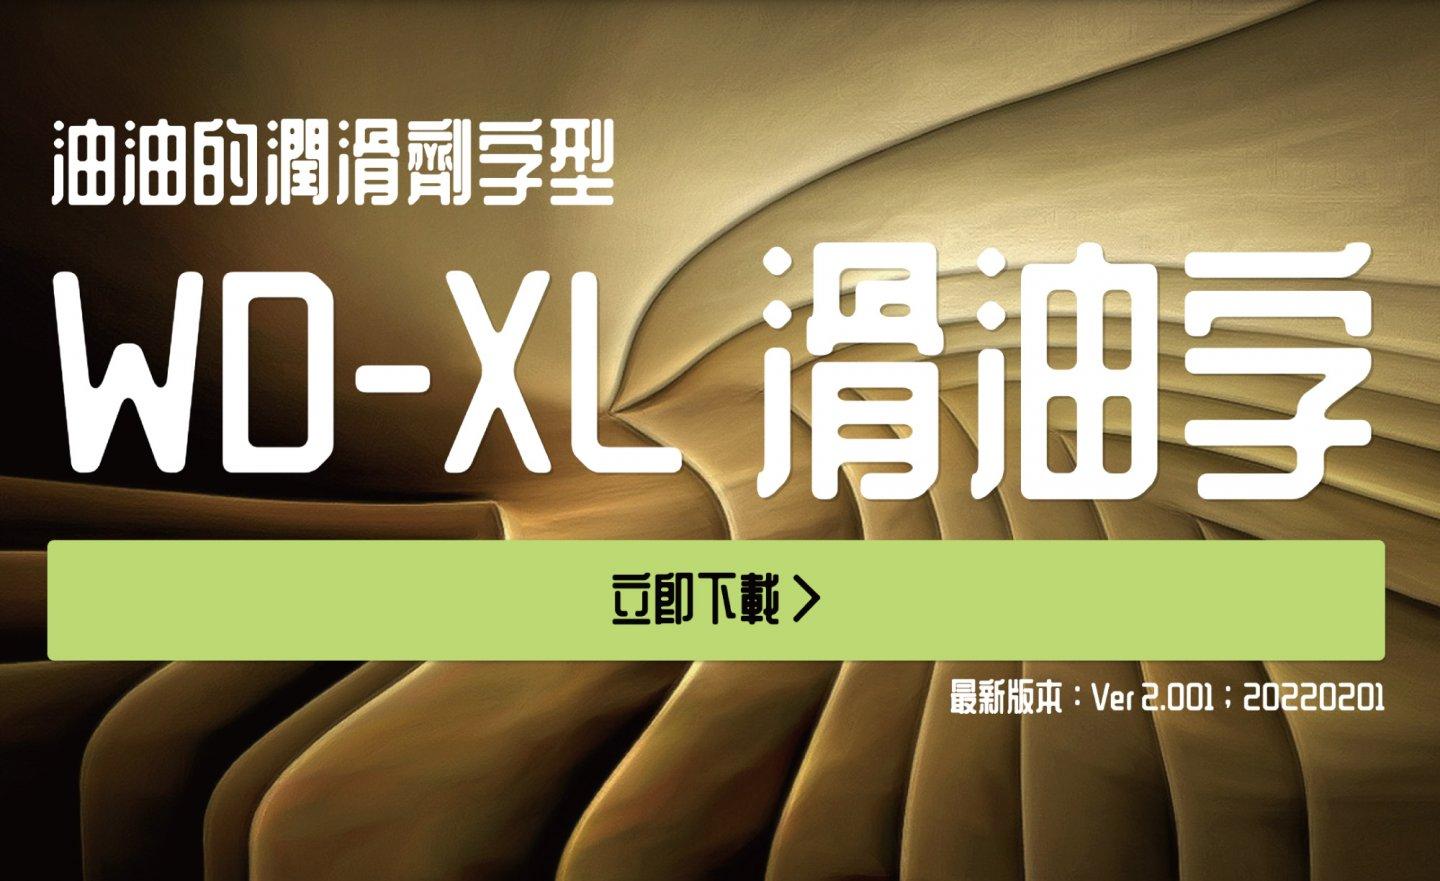 【免費】(Wins/Mac)油油亮亮的 「WD-XL 滑油字」，完全開源免費商用